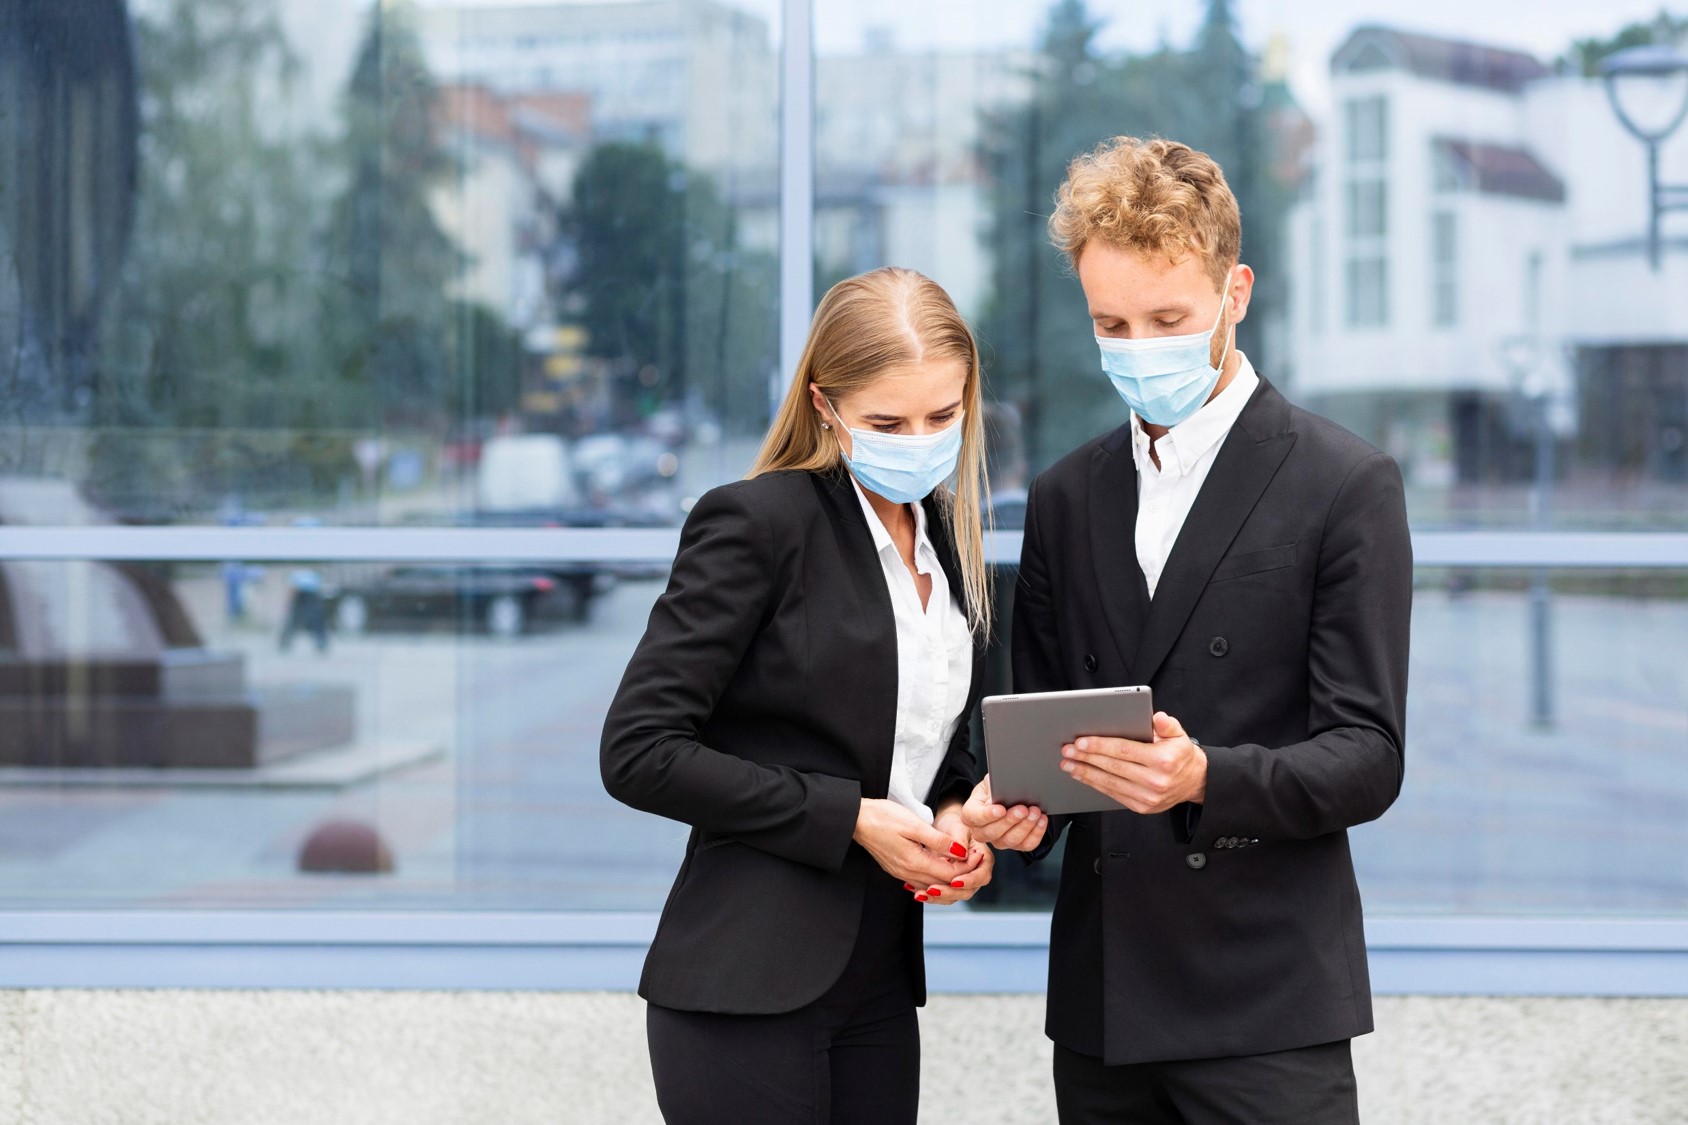 Młodzi ludzie: kobieta i mężczyzna stoją na tle szklanego budynku, mężczyzna pokazuje coś kobiecie na tablecie. Obydwoje mają maseczki chirurgiczne zakrywające usta i nos.